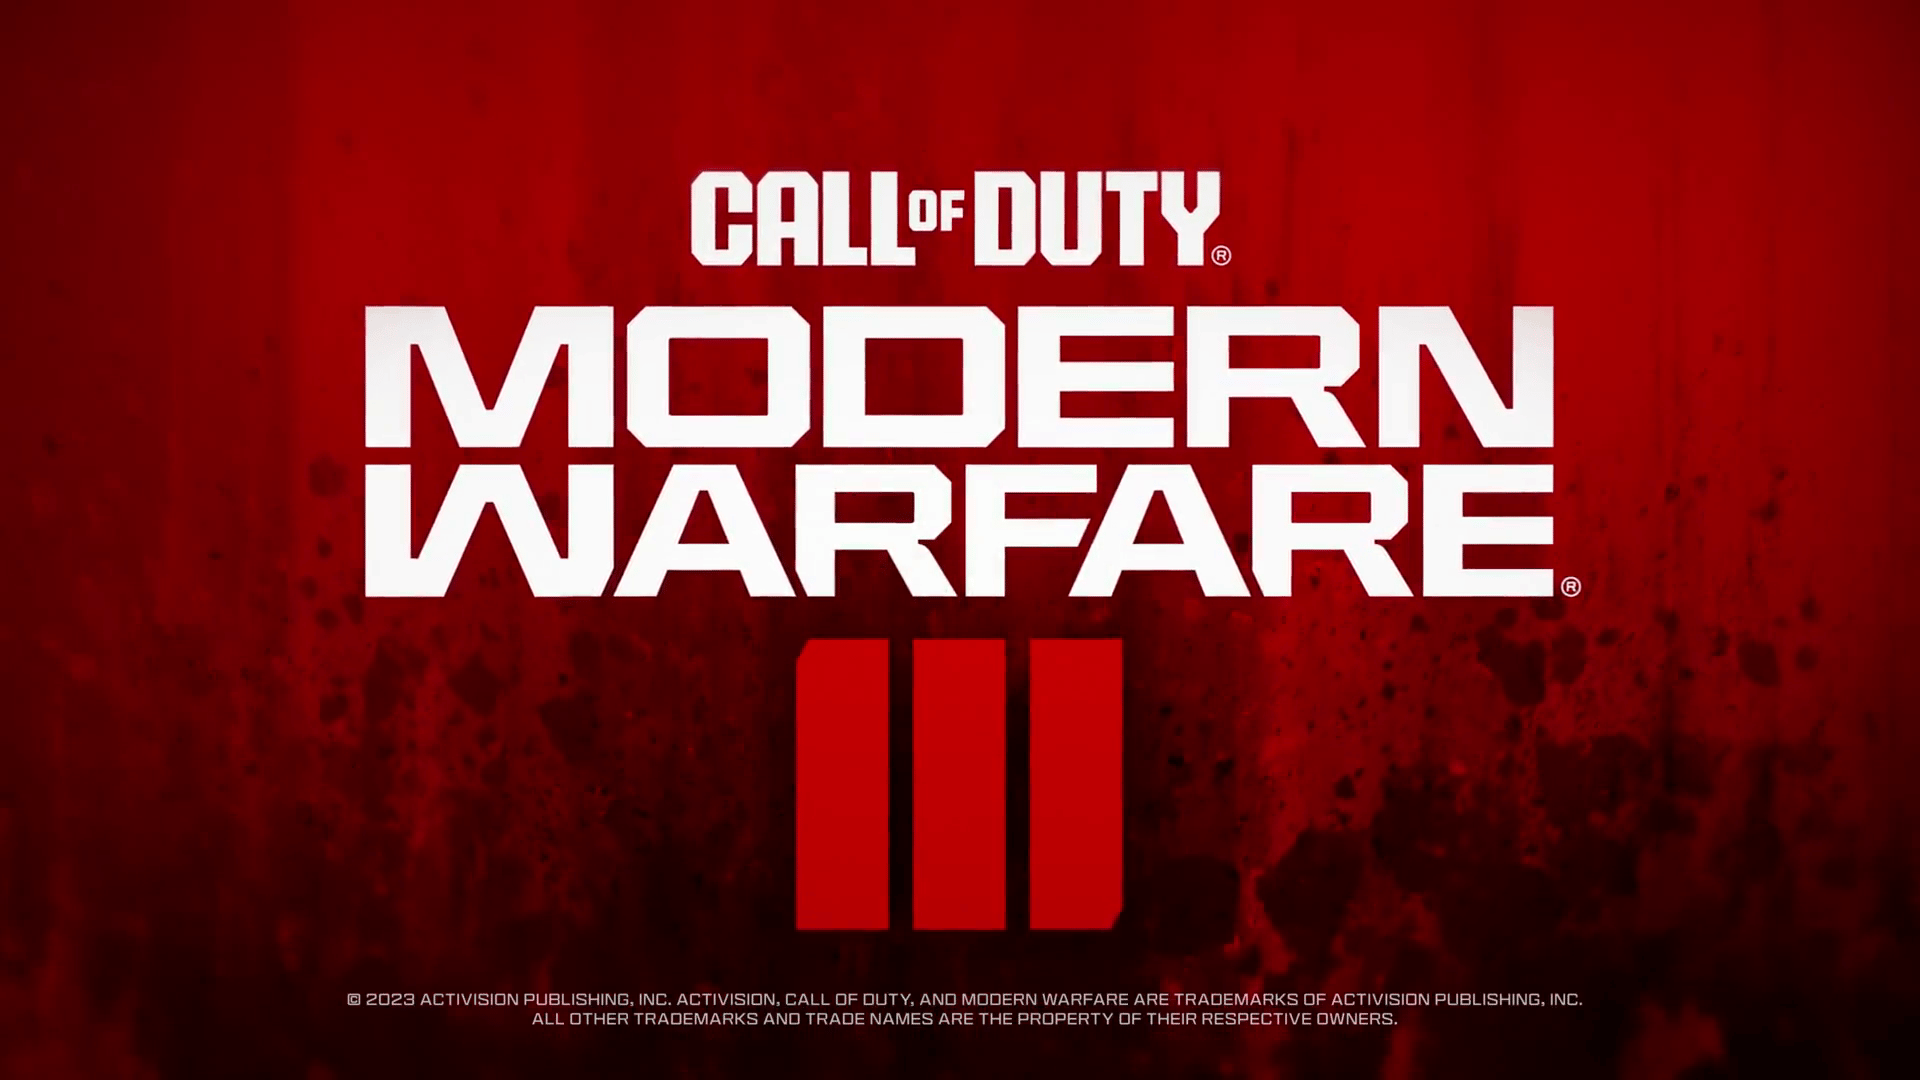 Call of Duty: Modern Warfare III a promis d’avoir « la plus grande offre de zombies à ce jour »